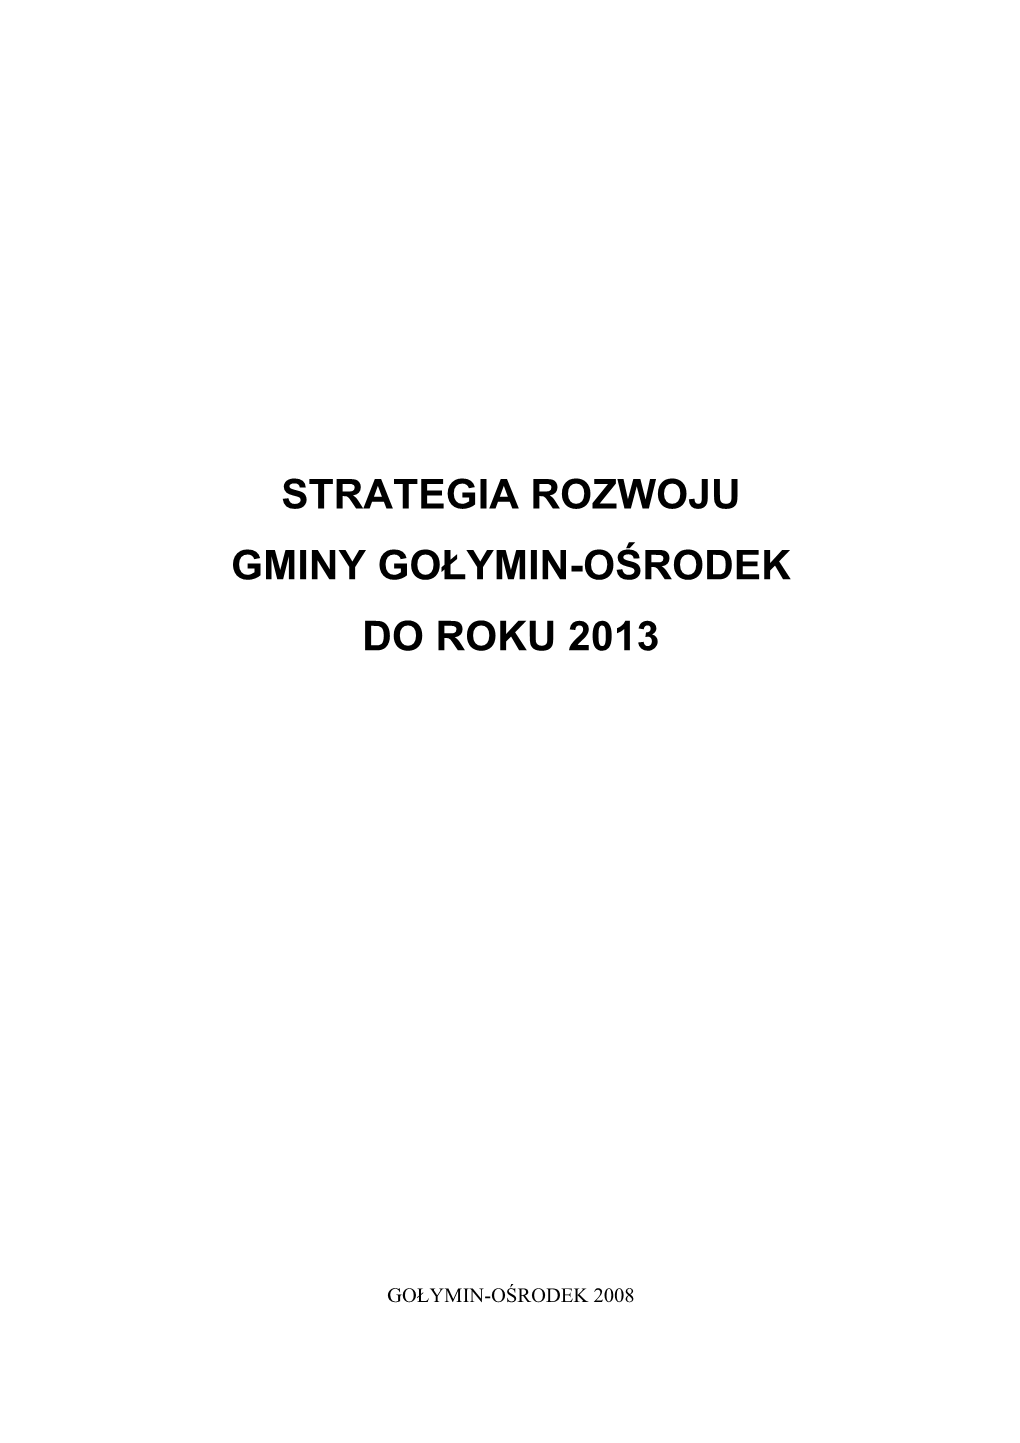 Strategia Rozwoju Gminy 2008 Go³ymin